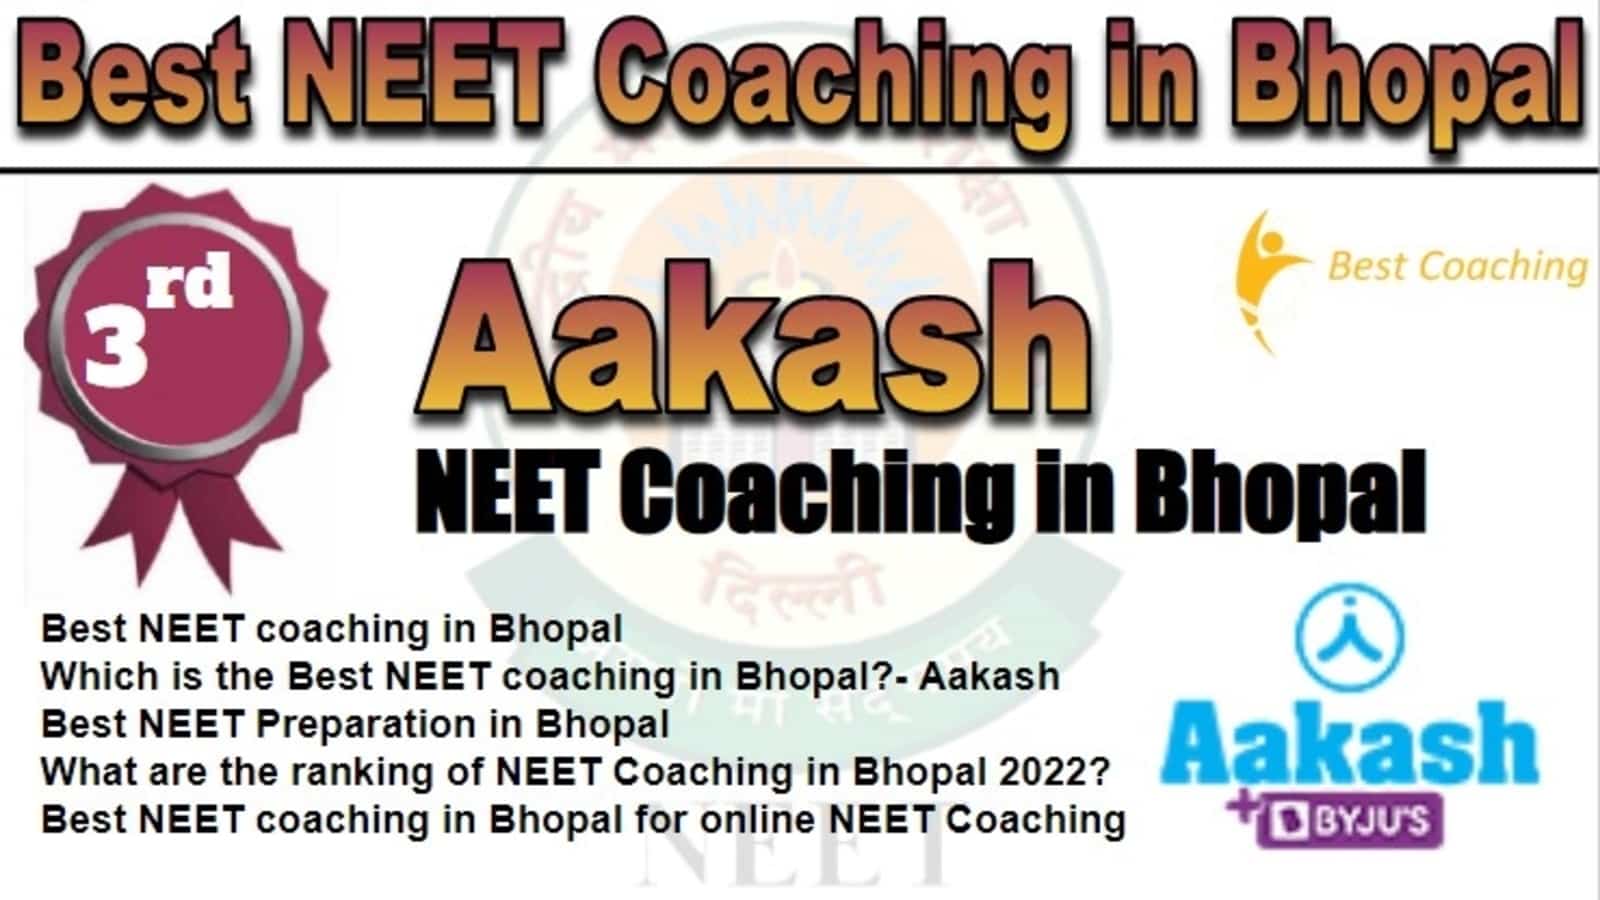 Rank 3 Best NEET Coaching in Bhopal